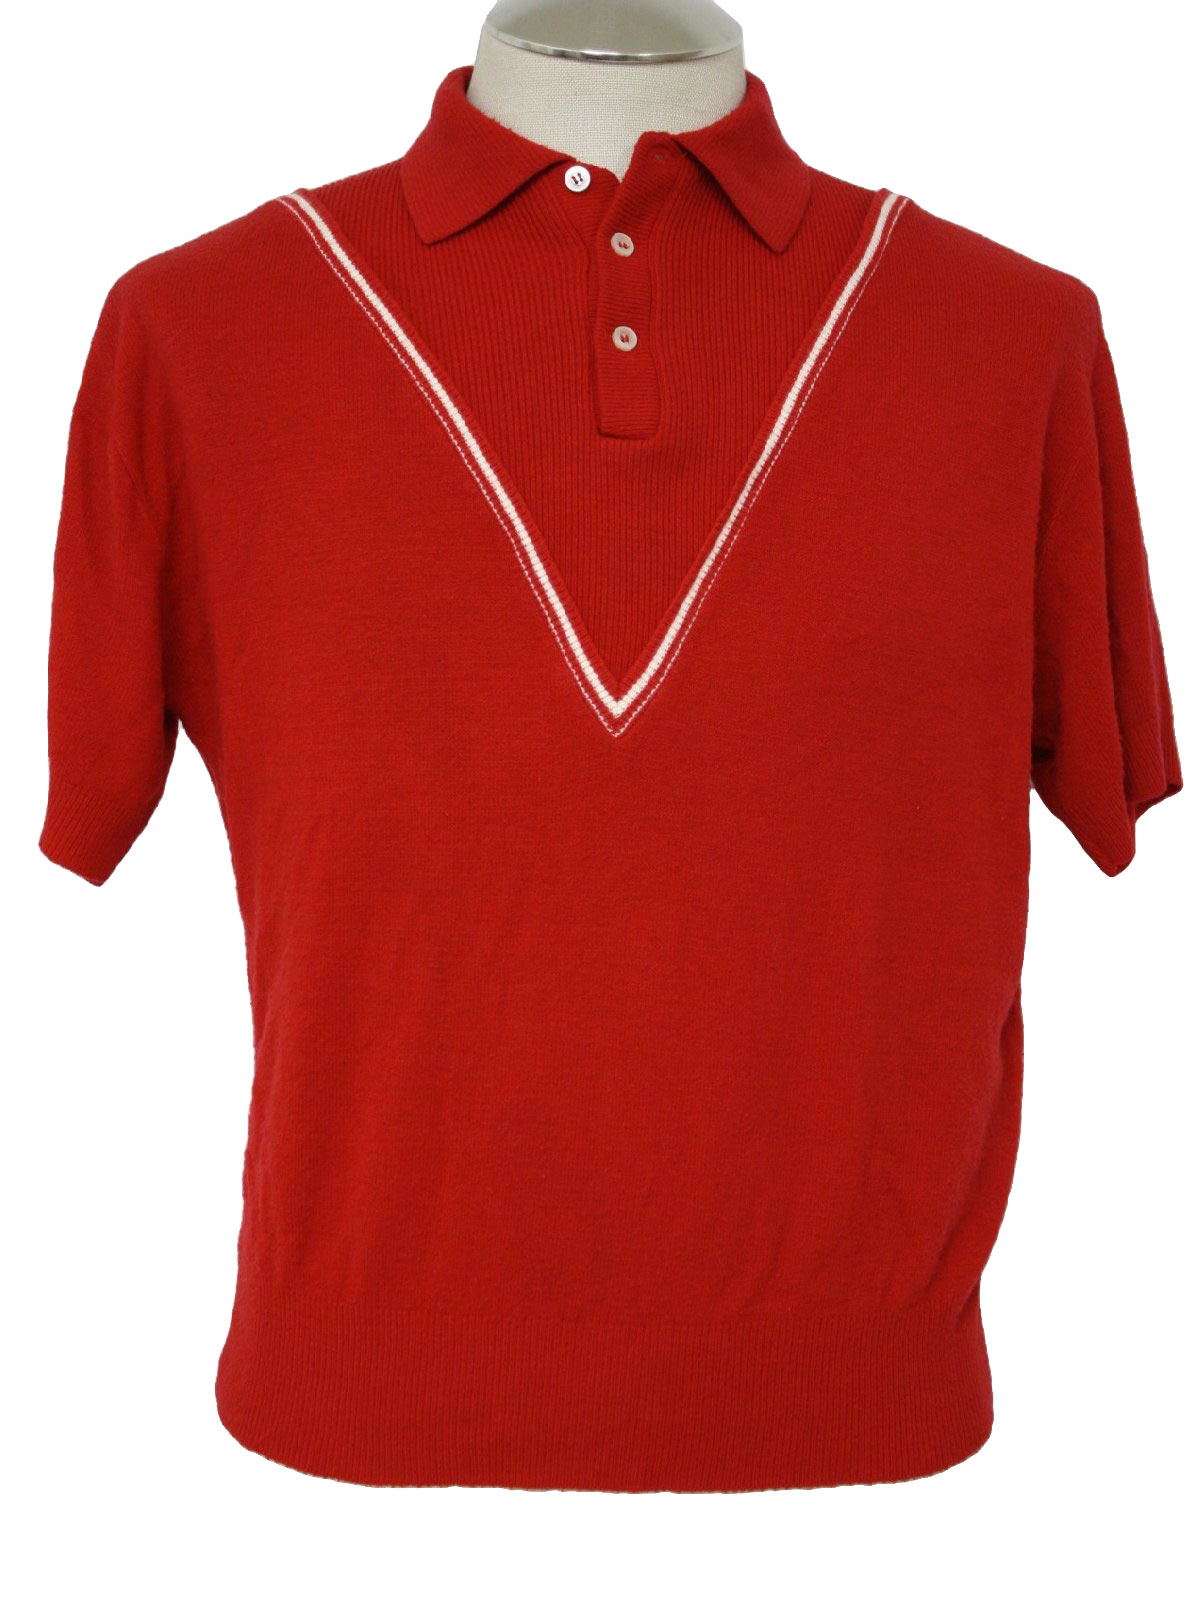 1960's Knit Shirt (Vandermast): 60s -Vandermast- Mens red and white ...